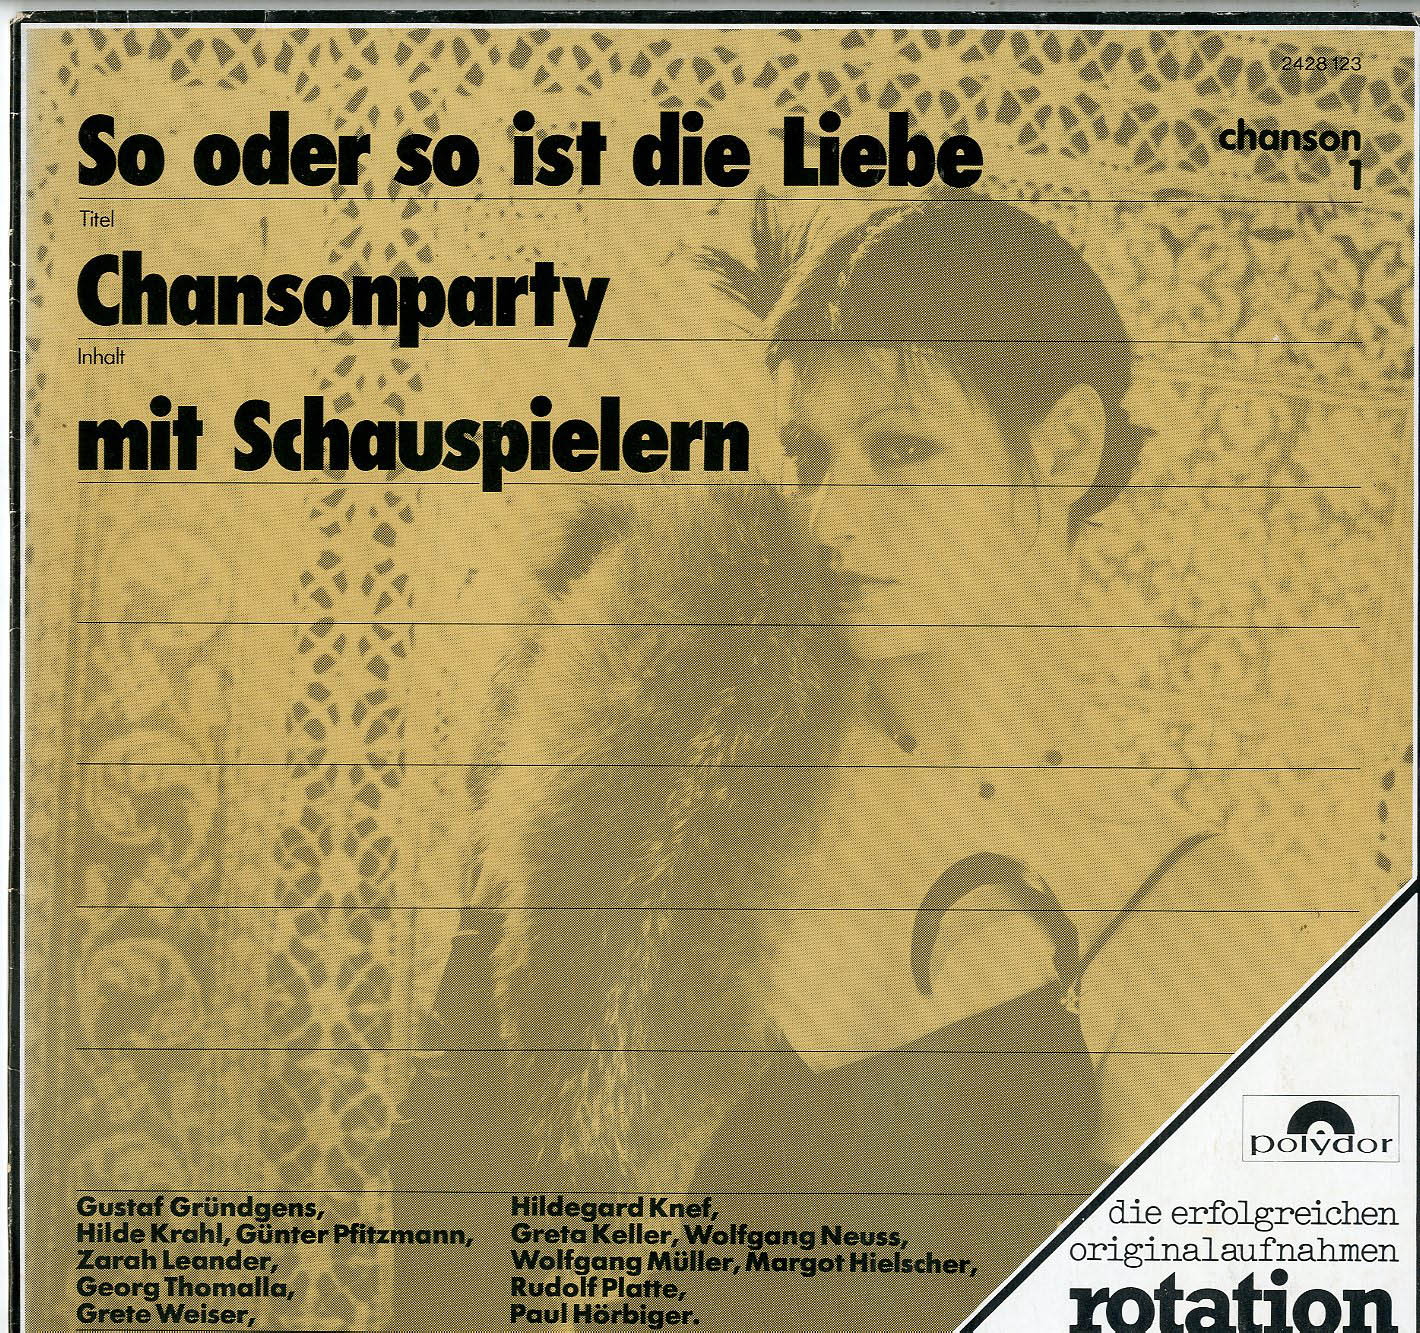 Albumcover Deutsche Chansons - So oder so ist die Liebe - Chansonparty mit Schauspielern (chanson 1)